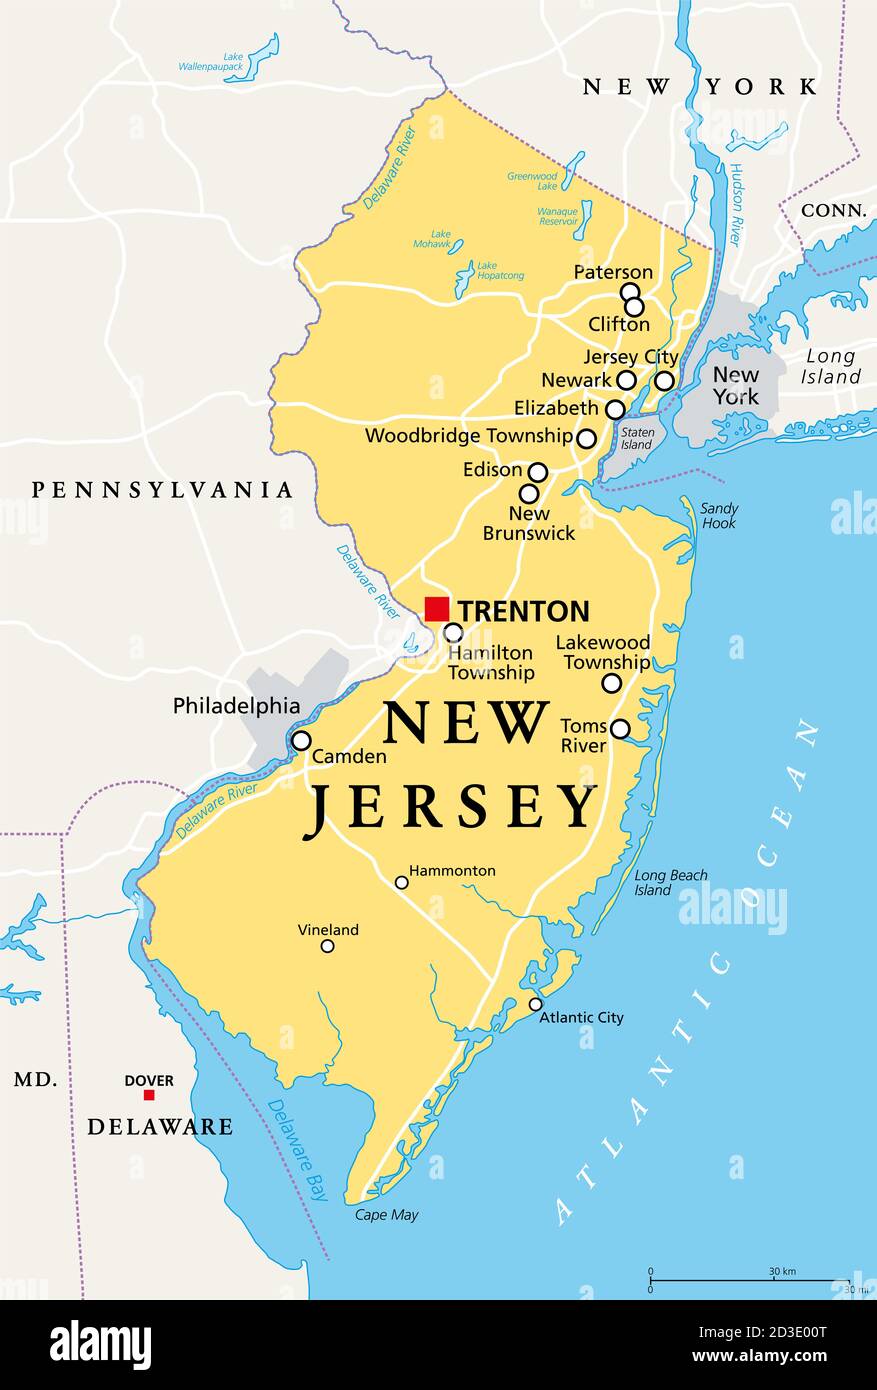 New Jersey, NJ, politische Landkarte mit der Hauptstadt Trenton. Staat in  der Mid-Atlantic Region im Nordosten der Vereinigten Staaten von Amerika.  The Garden State Stockfotografie - Alamy